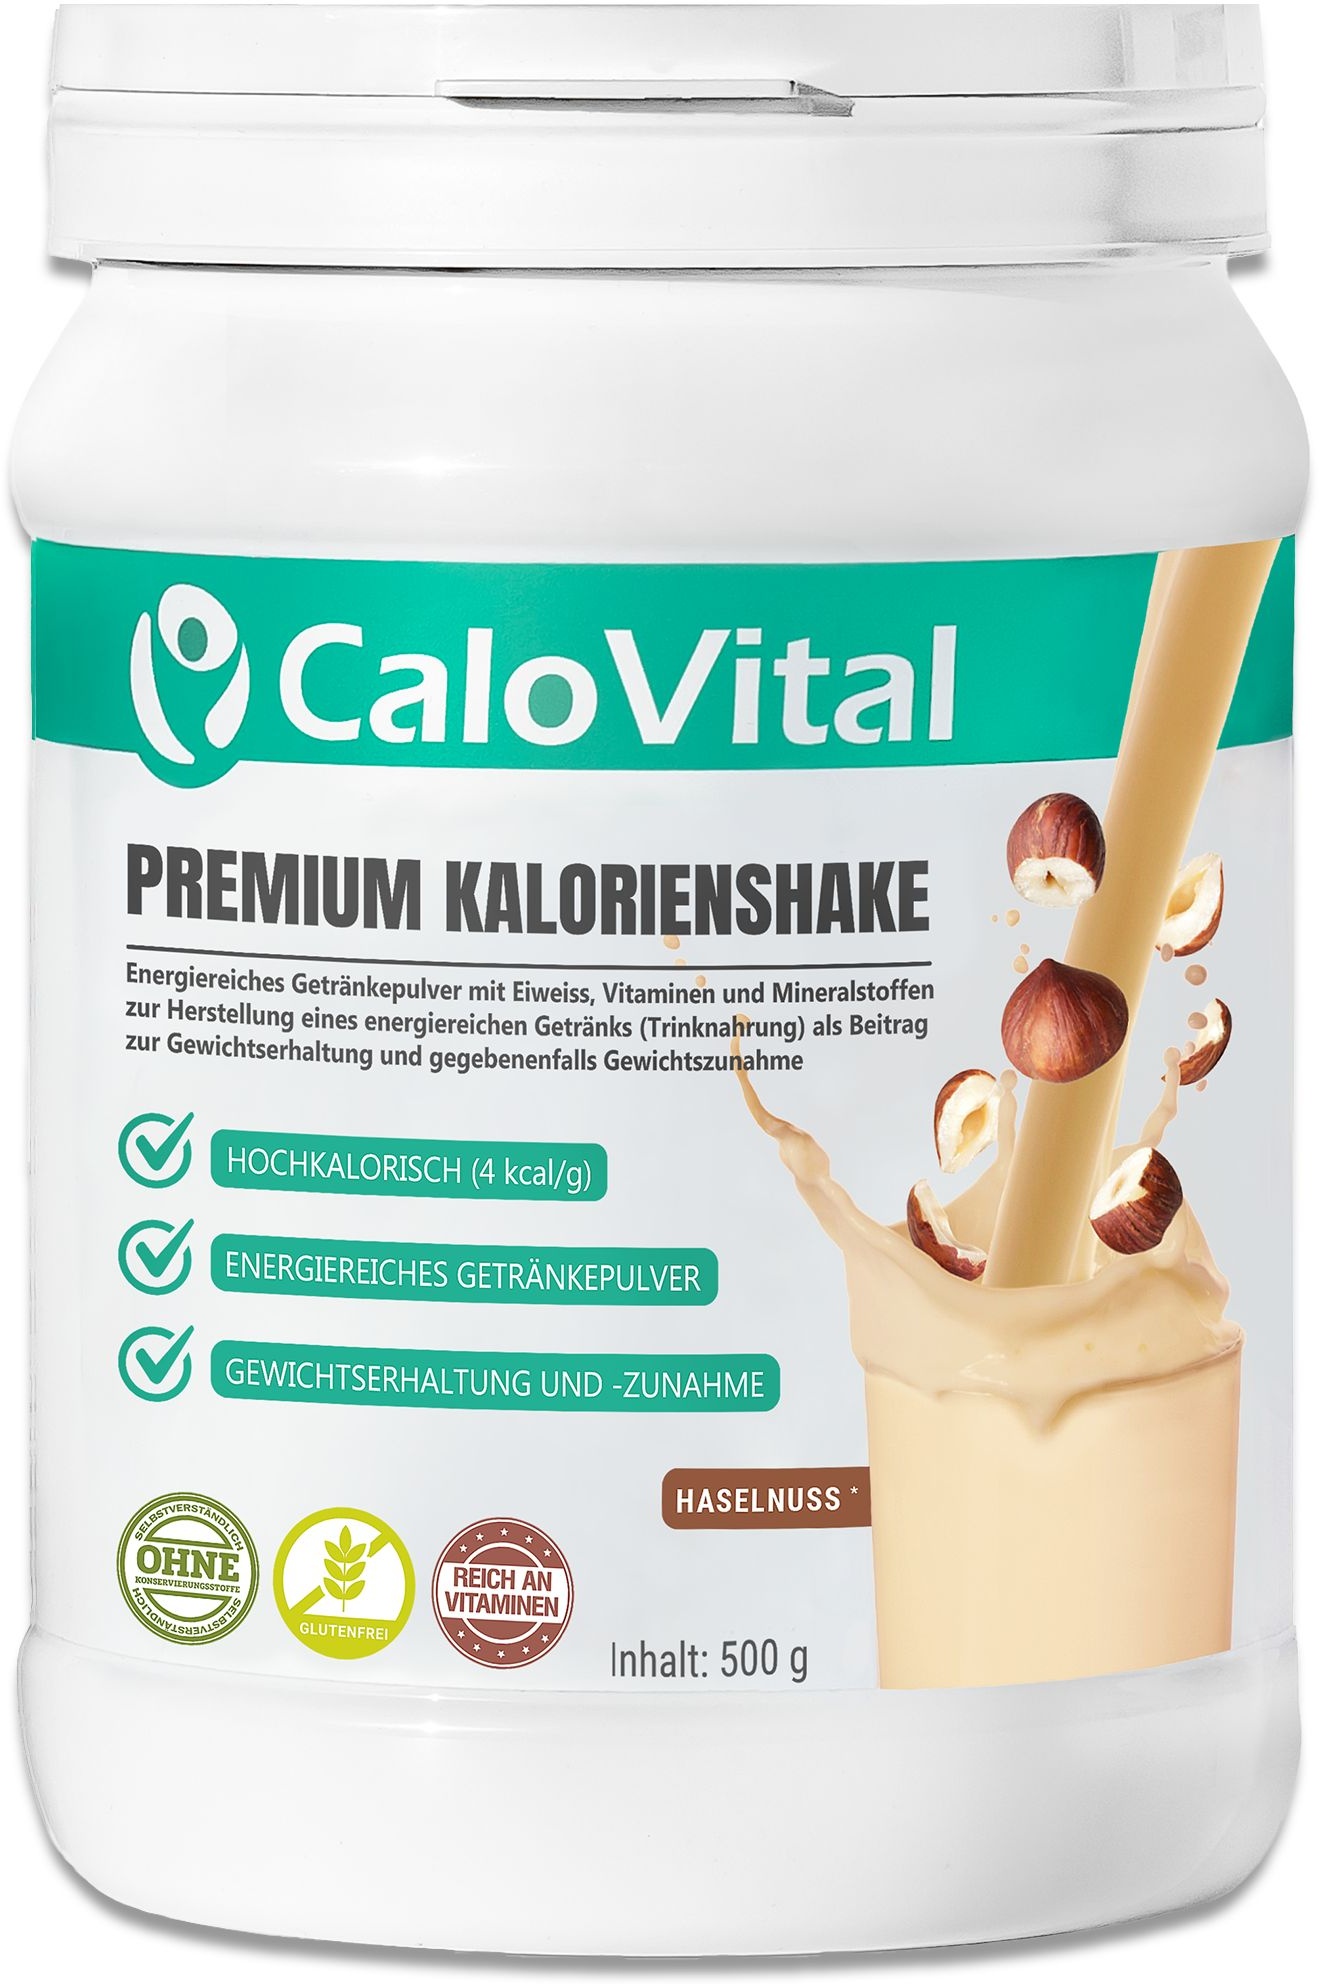 CaloVital | Hochkalorische Trinknahrung Sondennahrung für Gewichtszunahme 500 g